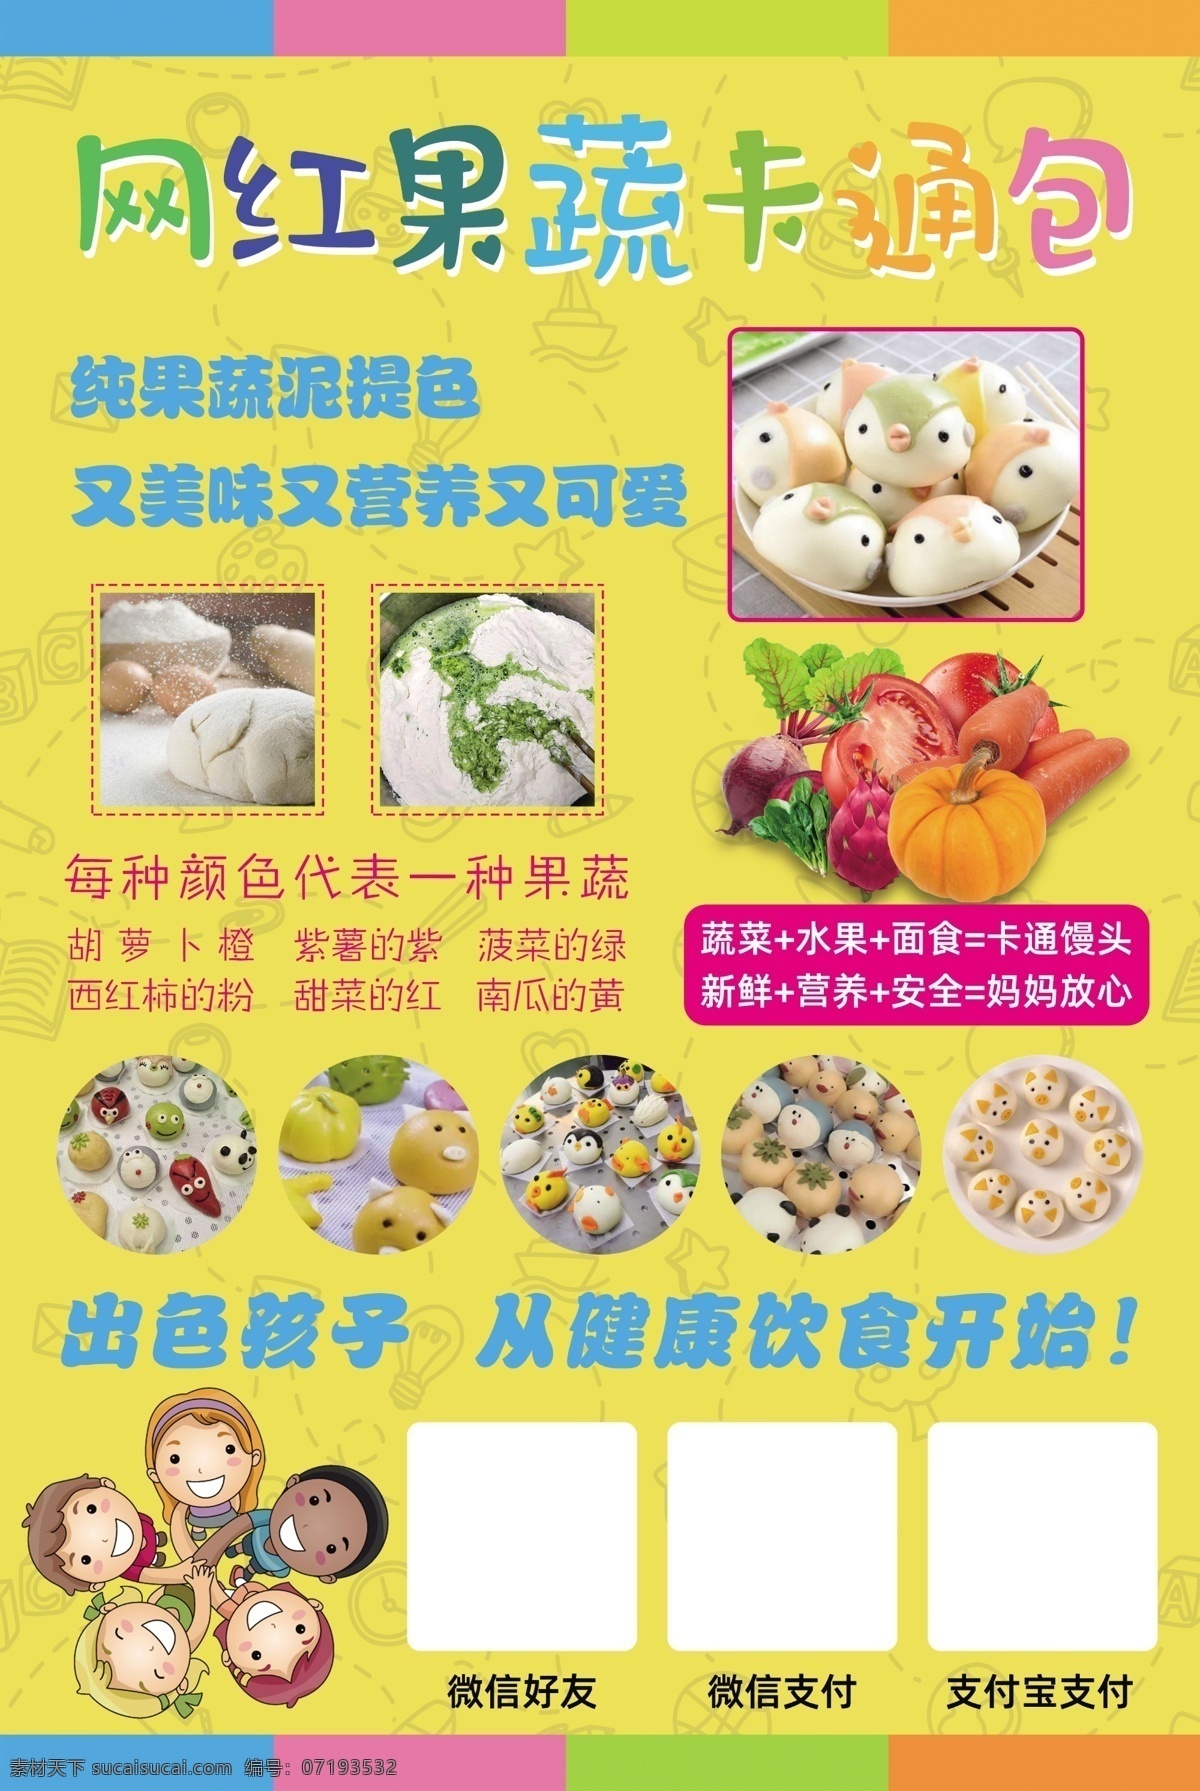 果蔬卡通包 儿童 果蔬包 网红 卡通包 可爱 佩奇 小狗 传单 宣传单 美食 dm宣传单